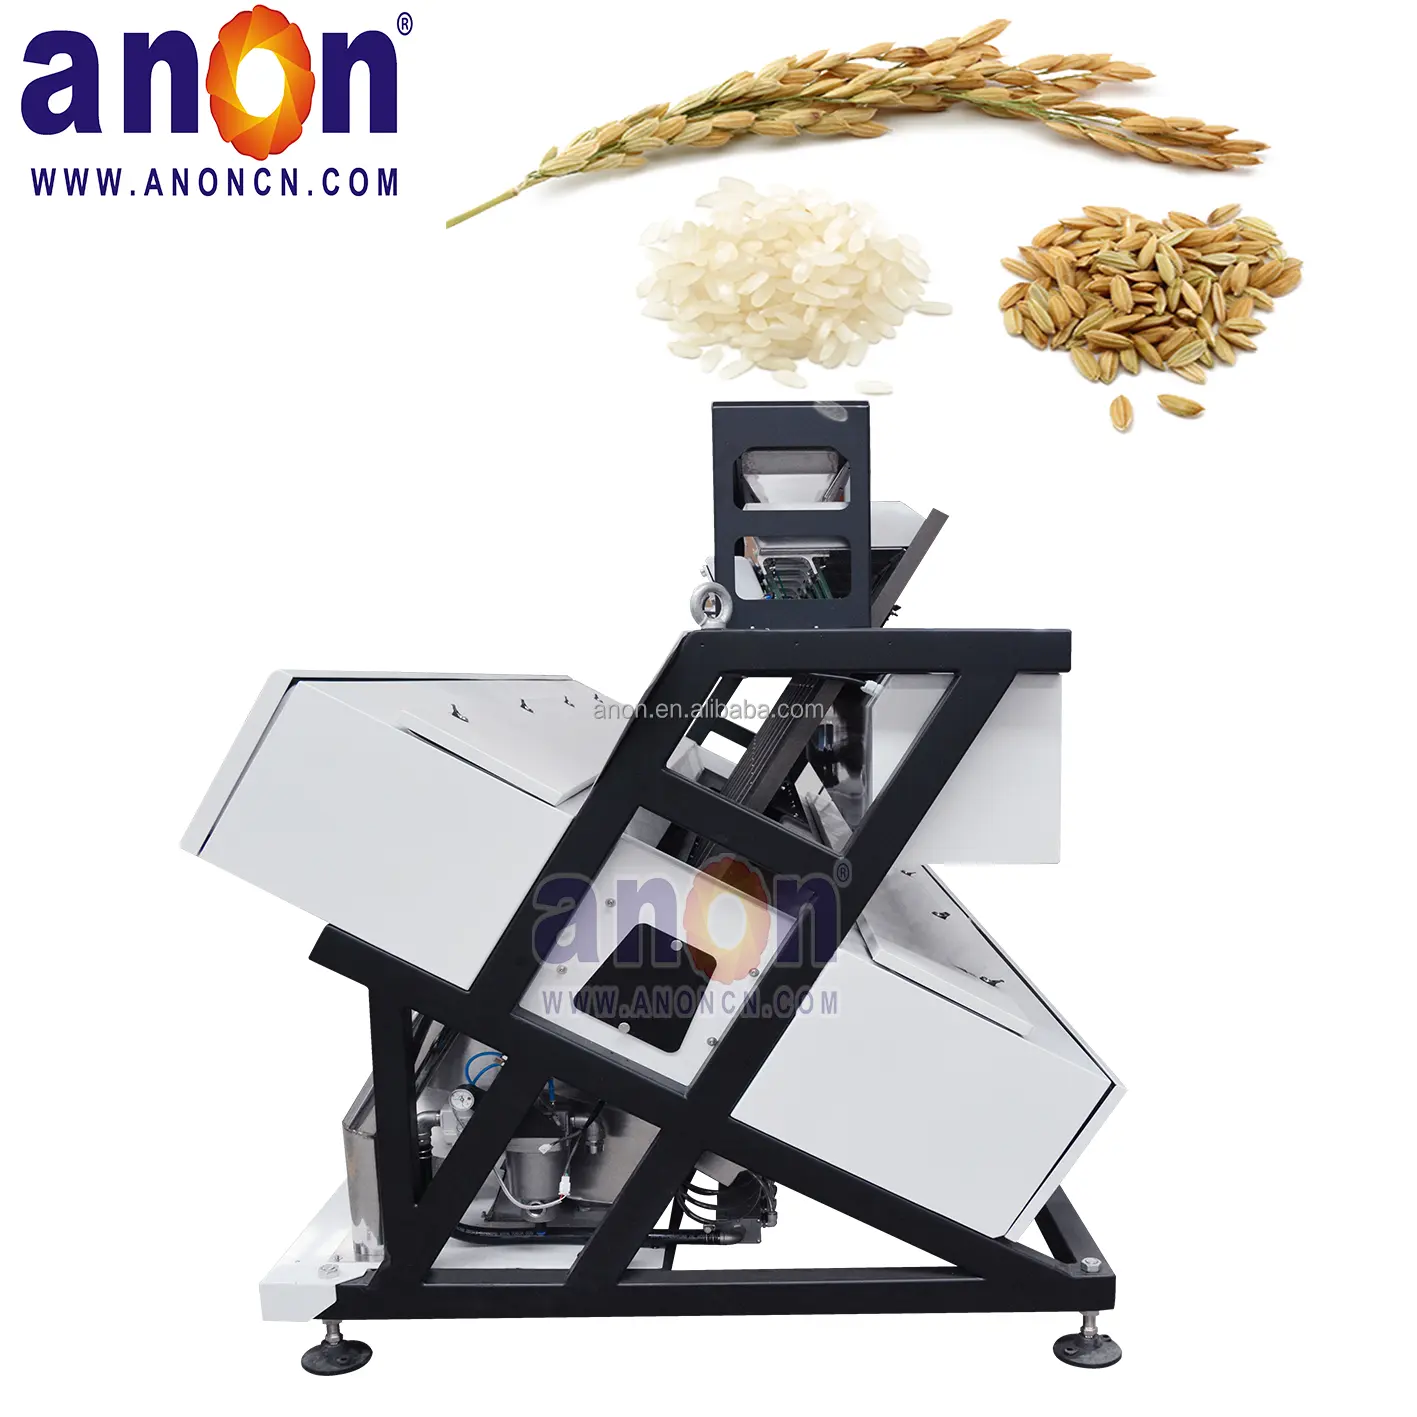 ماكينة تصنيف ألوان الحبوب ANON آلة تصنيع آلة مصقول الأرز بسعر نيجيري ماكينة تصنيف ألوان الأرز والقهوة